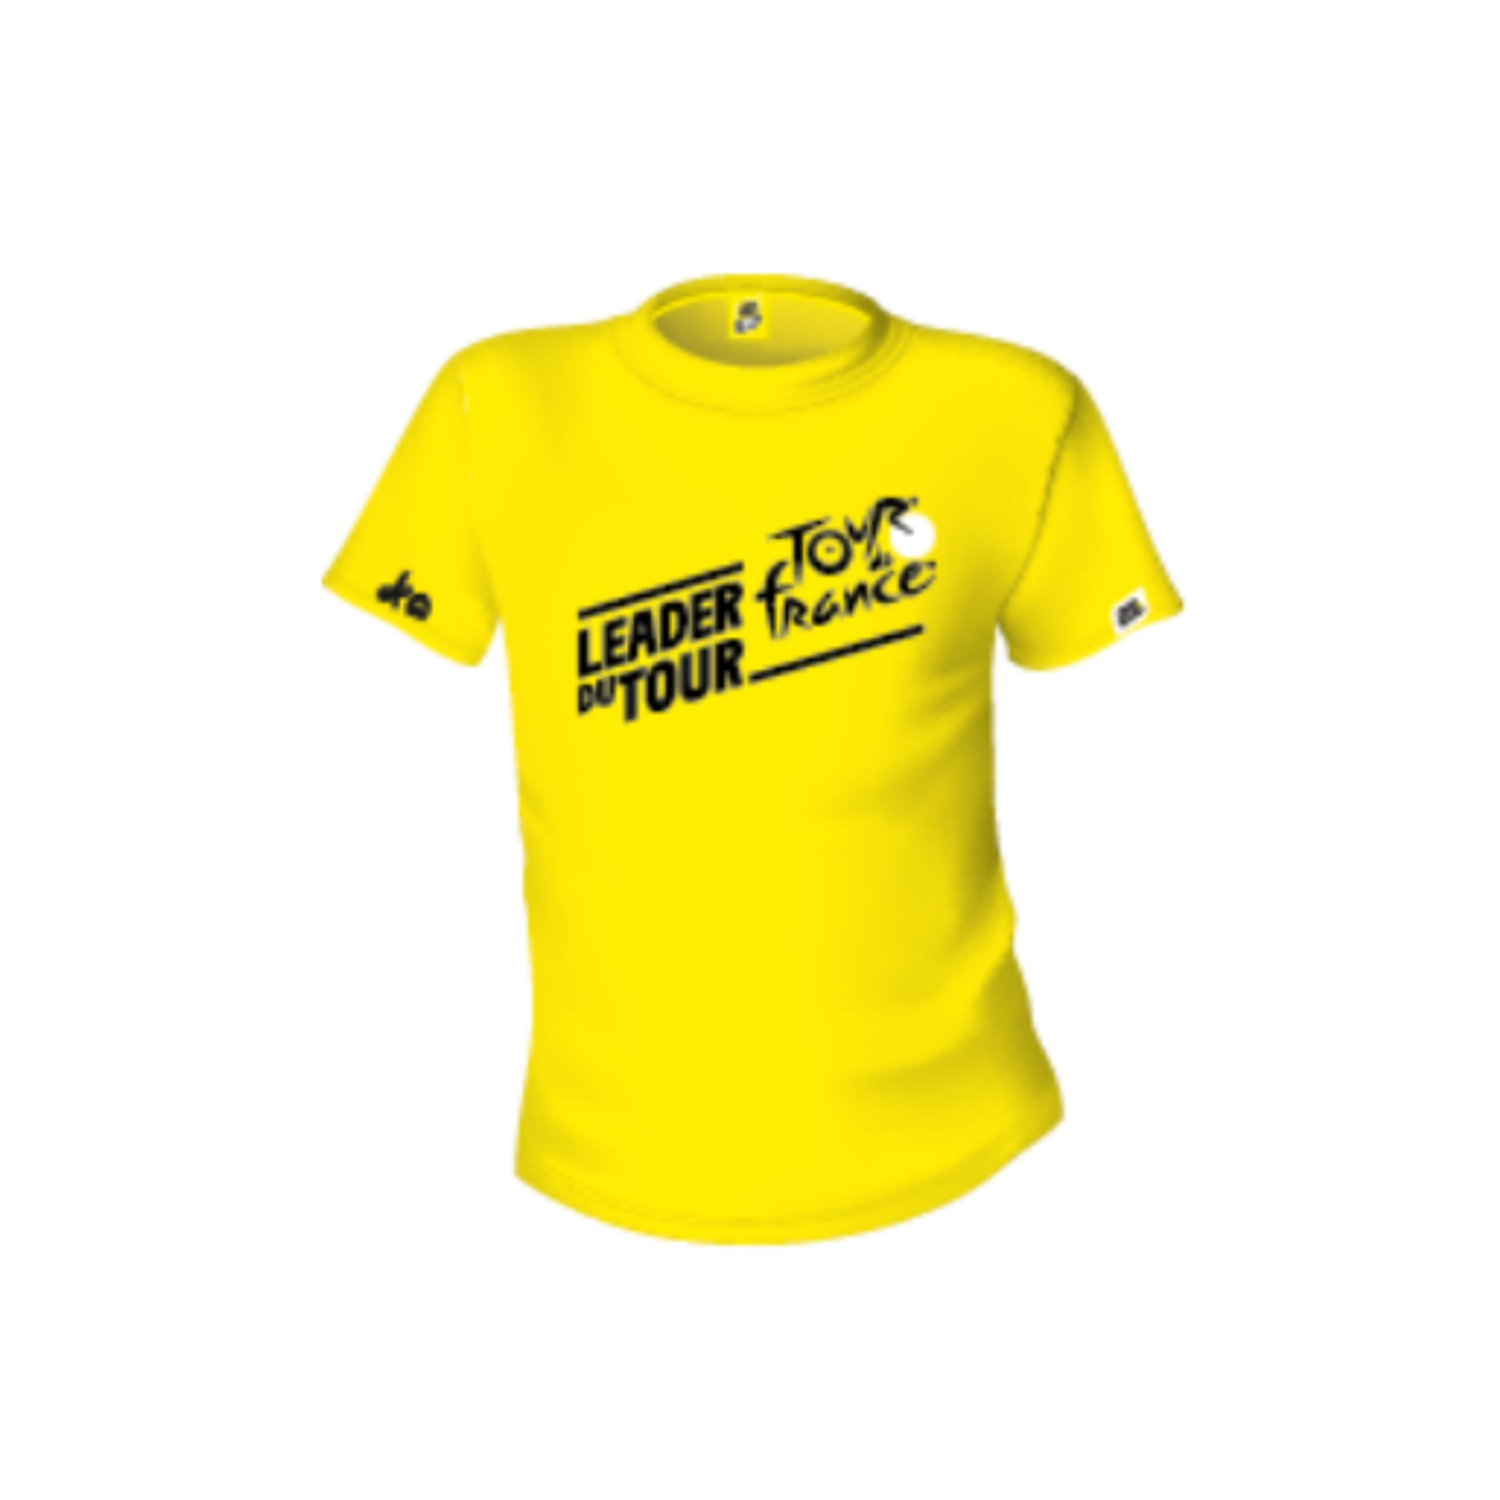 T-shirt Tour de France Leader du Tour Jaune